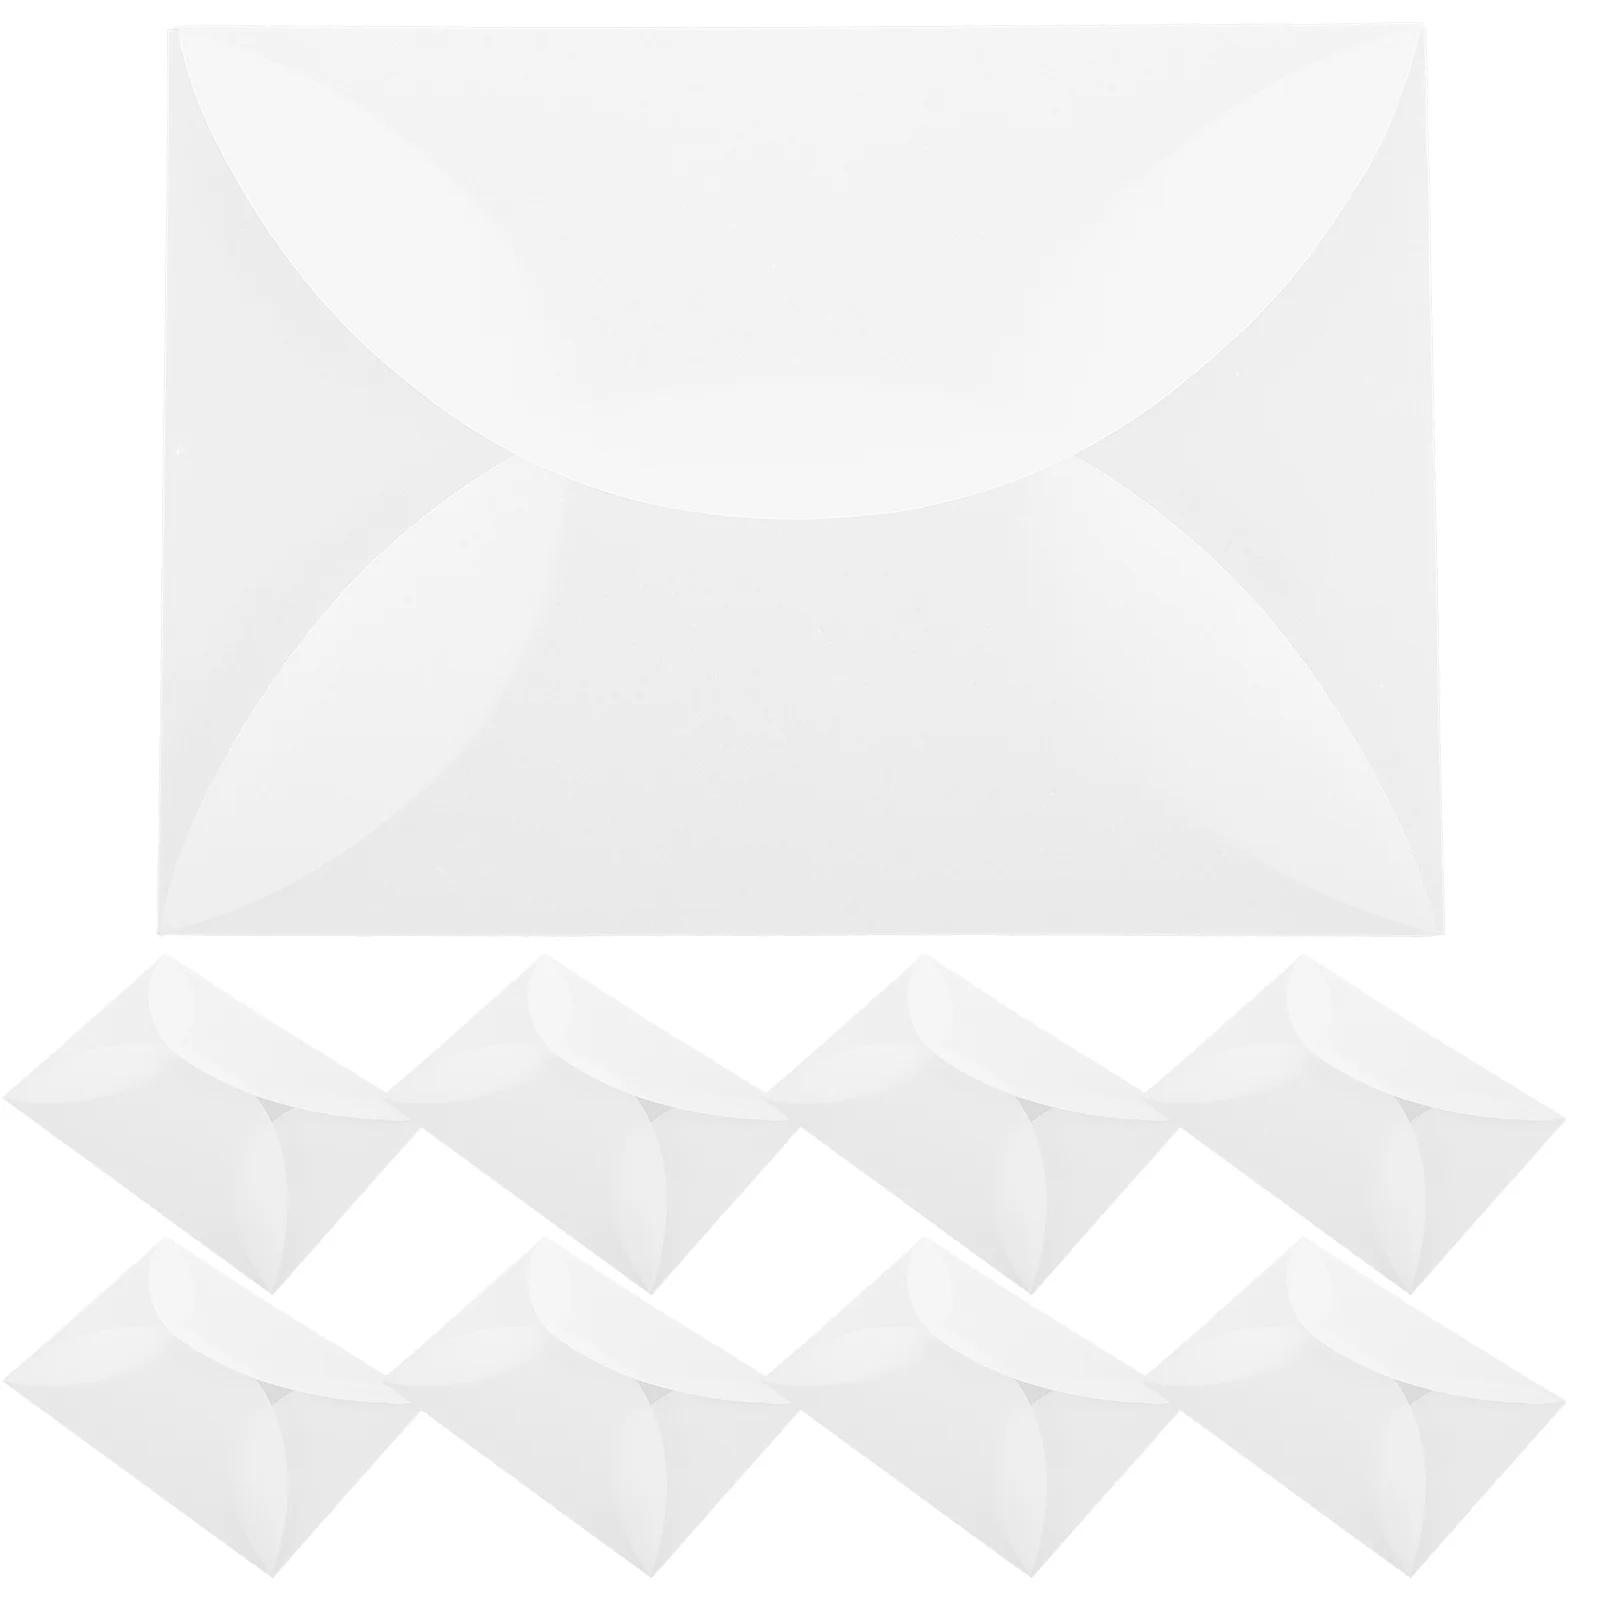 

10 шт. конверт 5x7 вкладышей, конверты для приглашений, красивые белые бумажные конверты для приглашений